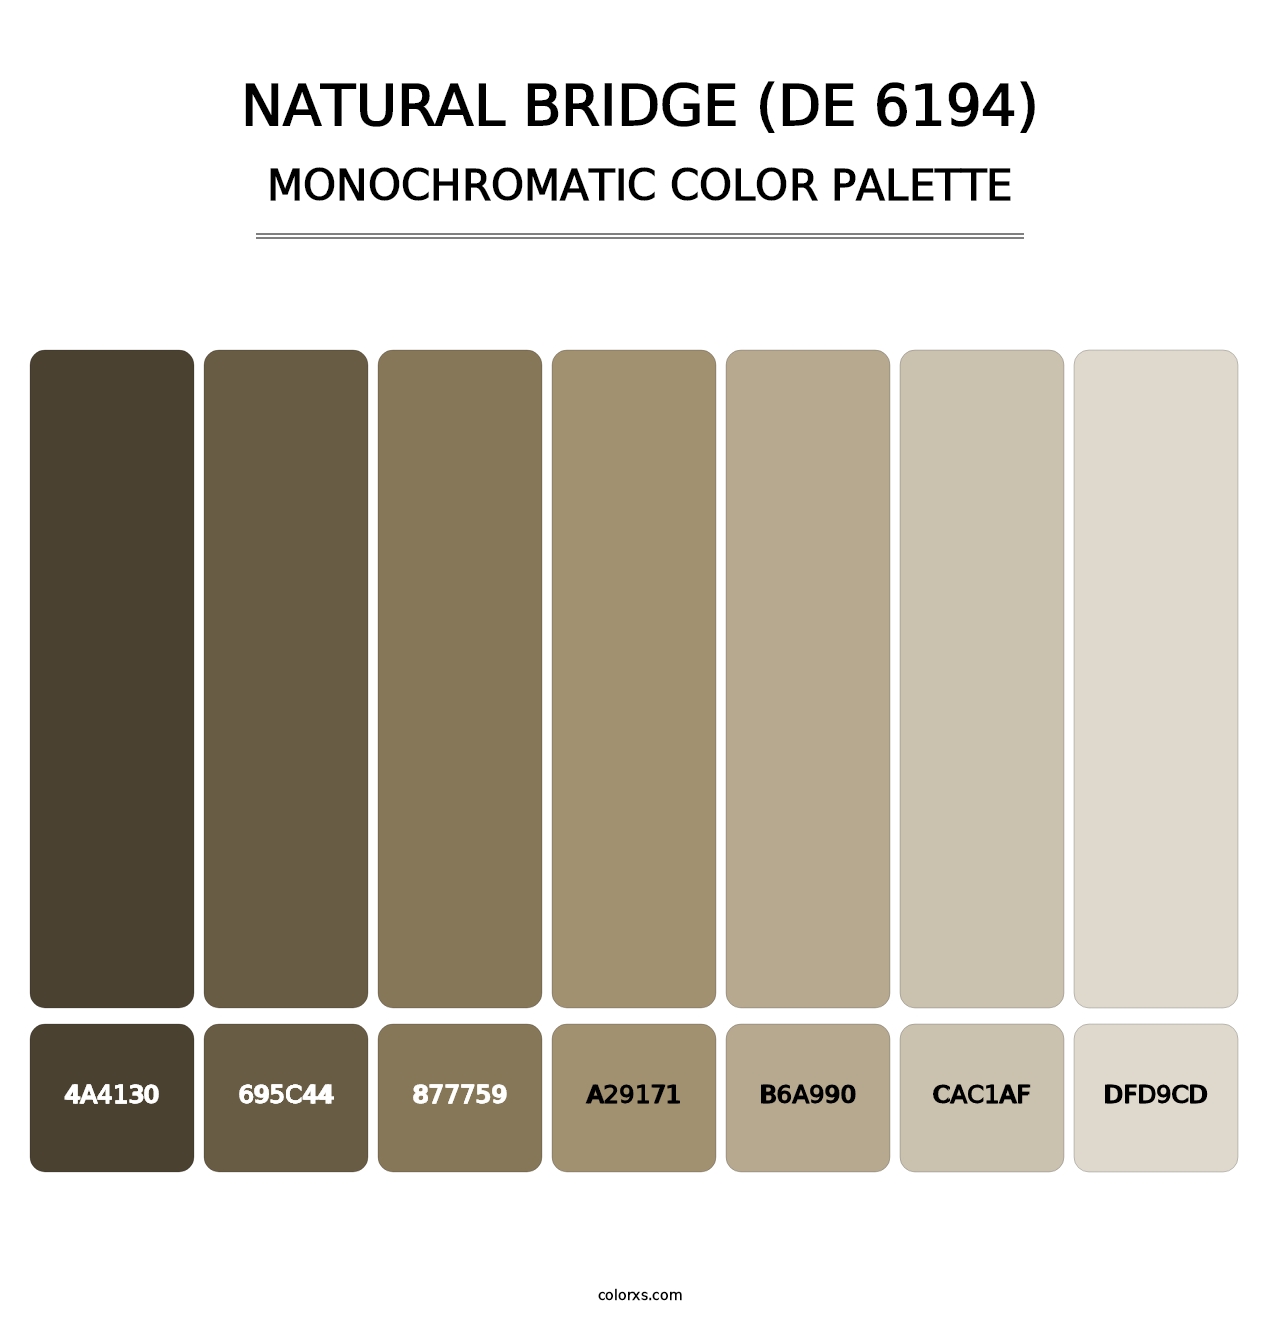 Natural Bridge (DE 6194) - Monochromatic Color Palette